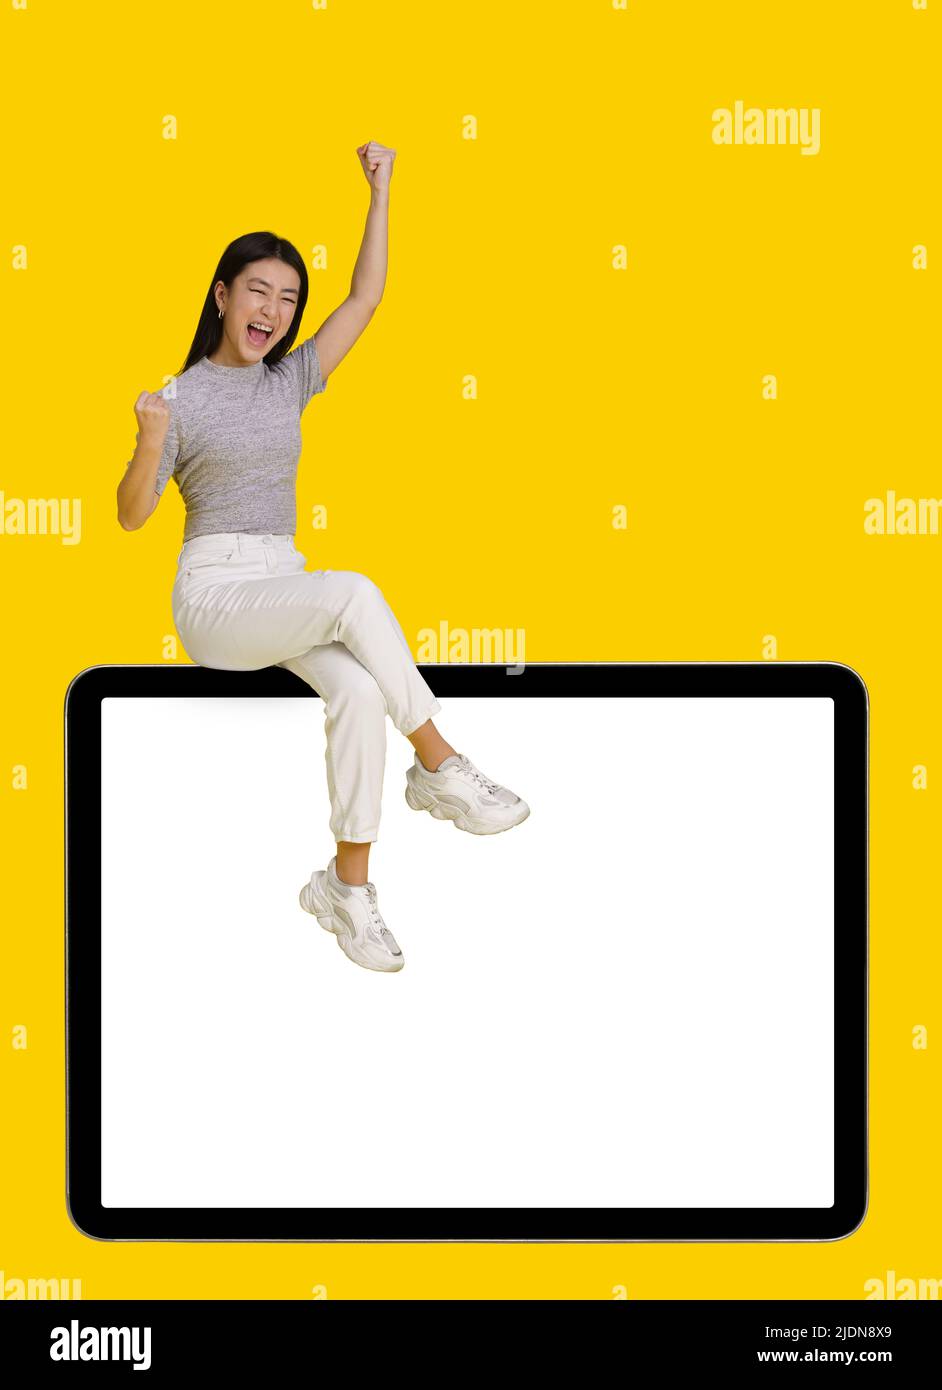 Vinci un gesto eccitato ragazza asiatica seduta su un enorme tablet pc digitale con schermo bianco isolato su sfondo giallo. Simulazione del posizionamento dei prodotti per la pubblicità tramite app mobile. Spazio di copia. Foto Stock